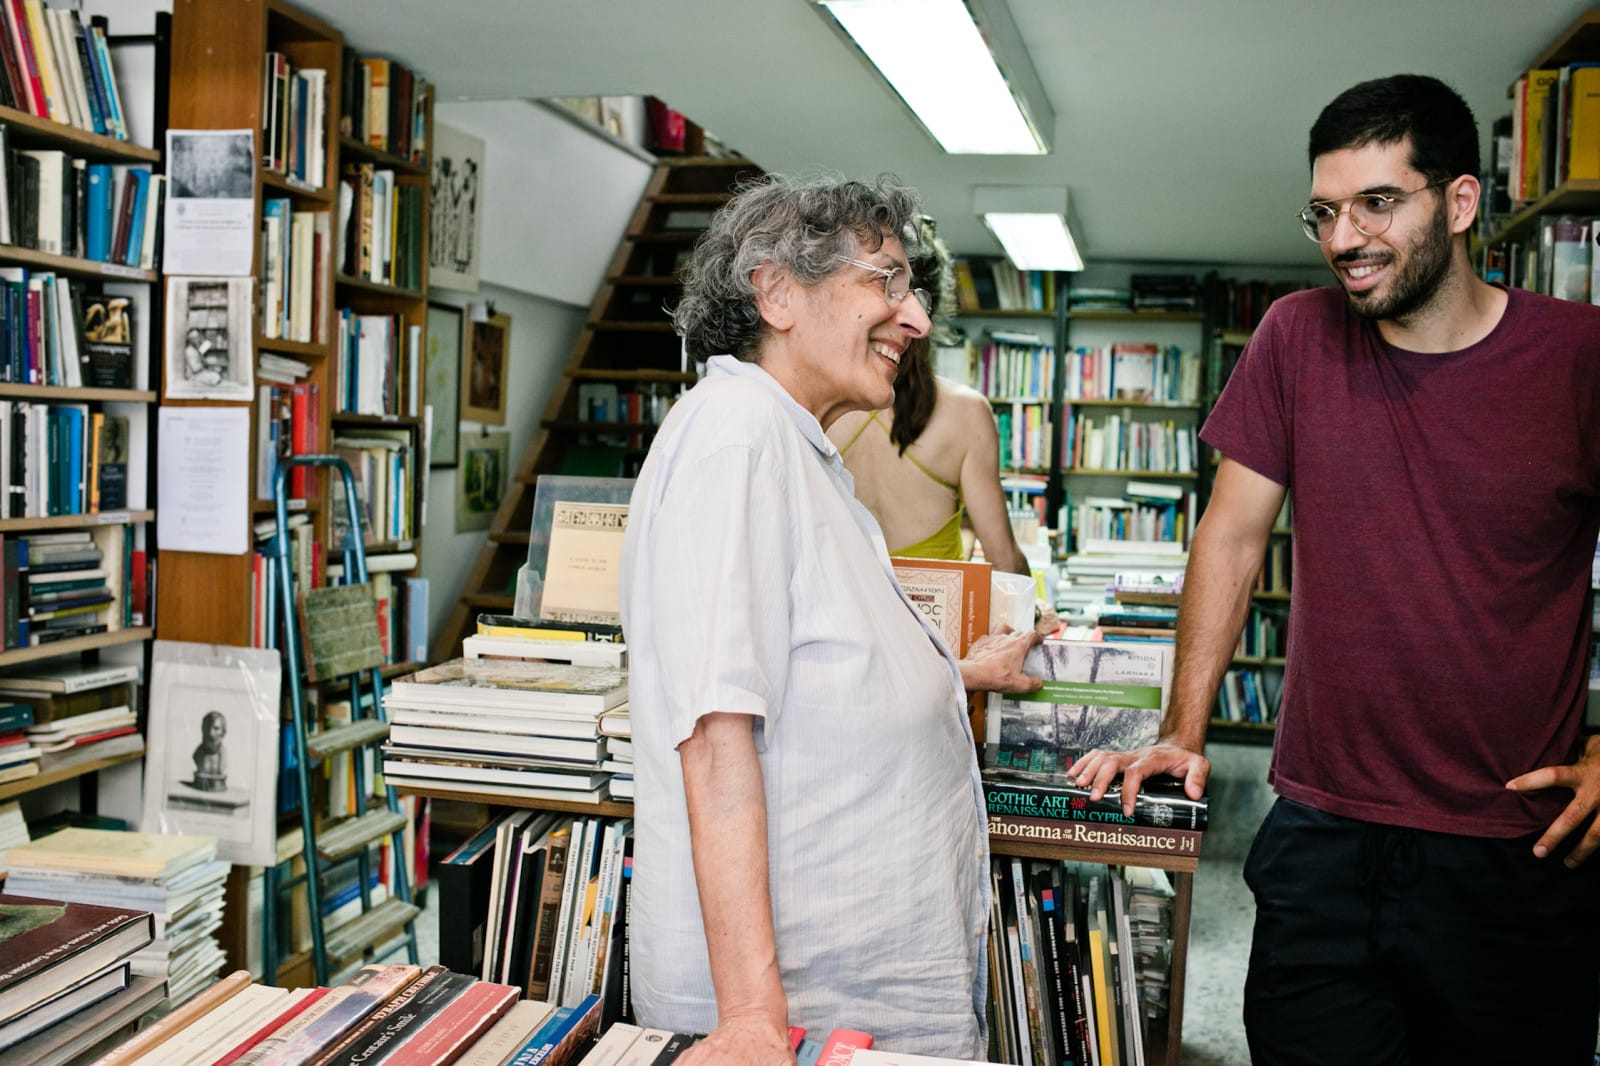 Рут Кешишьян, основательница книжного магазина Moufflon Bookshop в Никосии, Кипр. Источник: freundevonfreunden.com